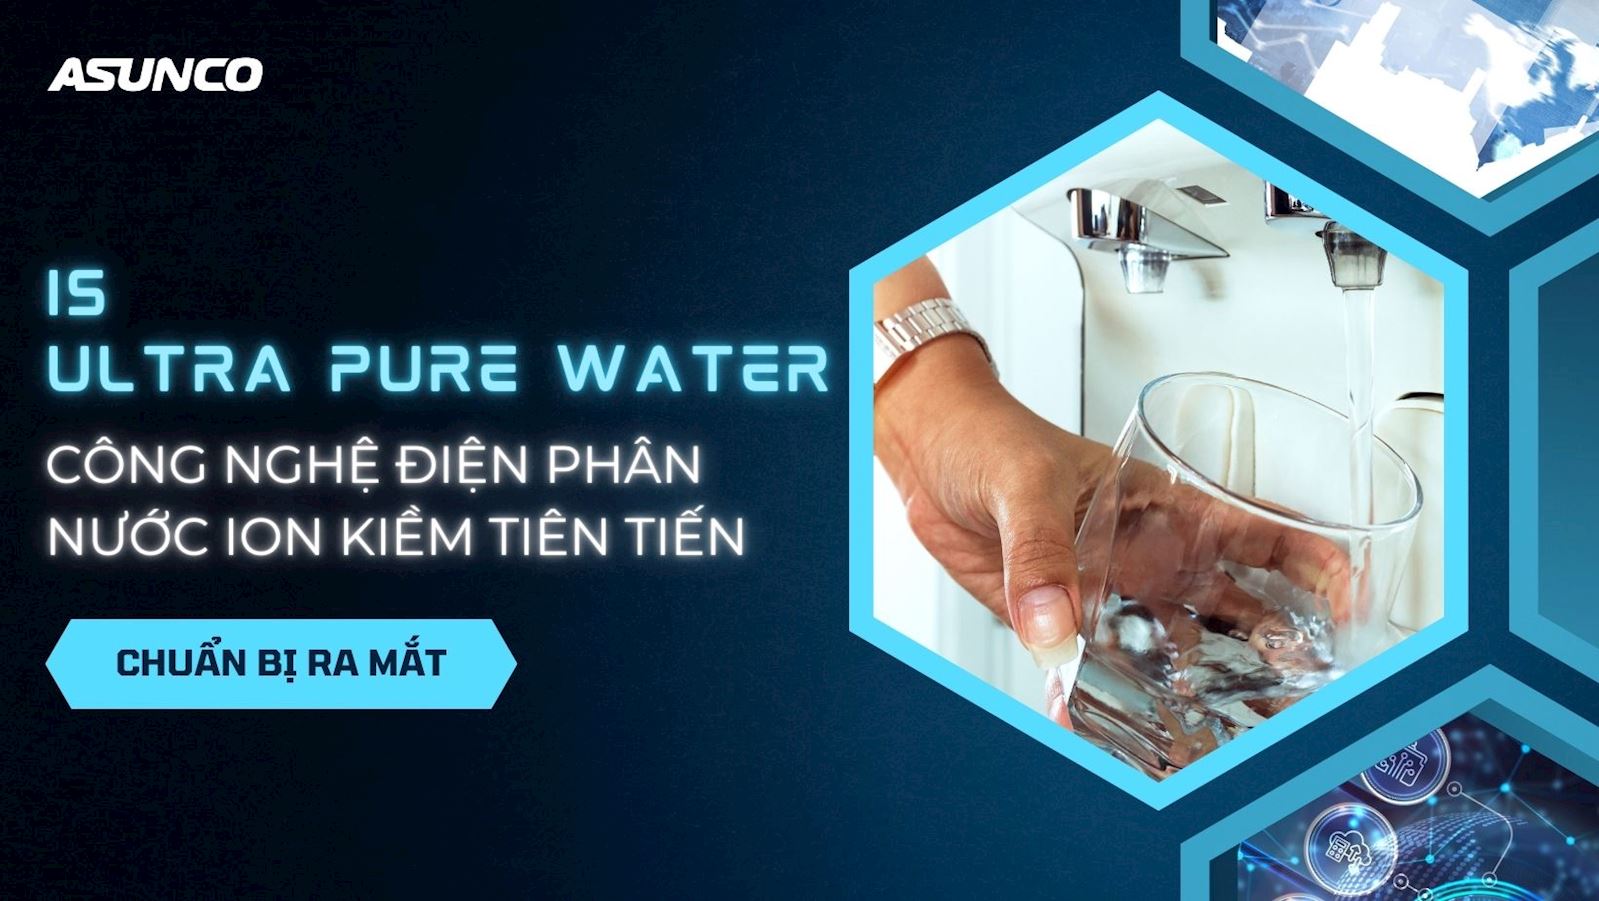 Công nghệ điện phân nước ion kiềm tiên tiến sắp ra mắt IS - Ultra Pure Water